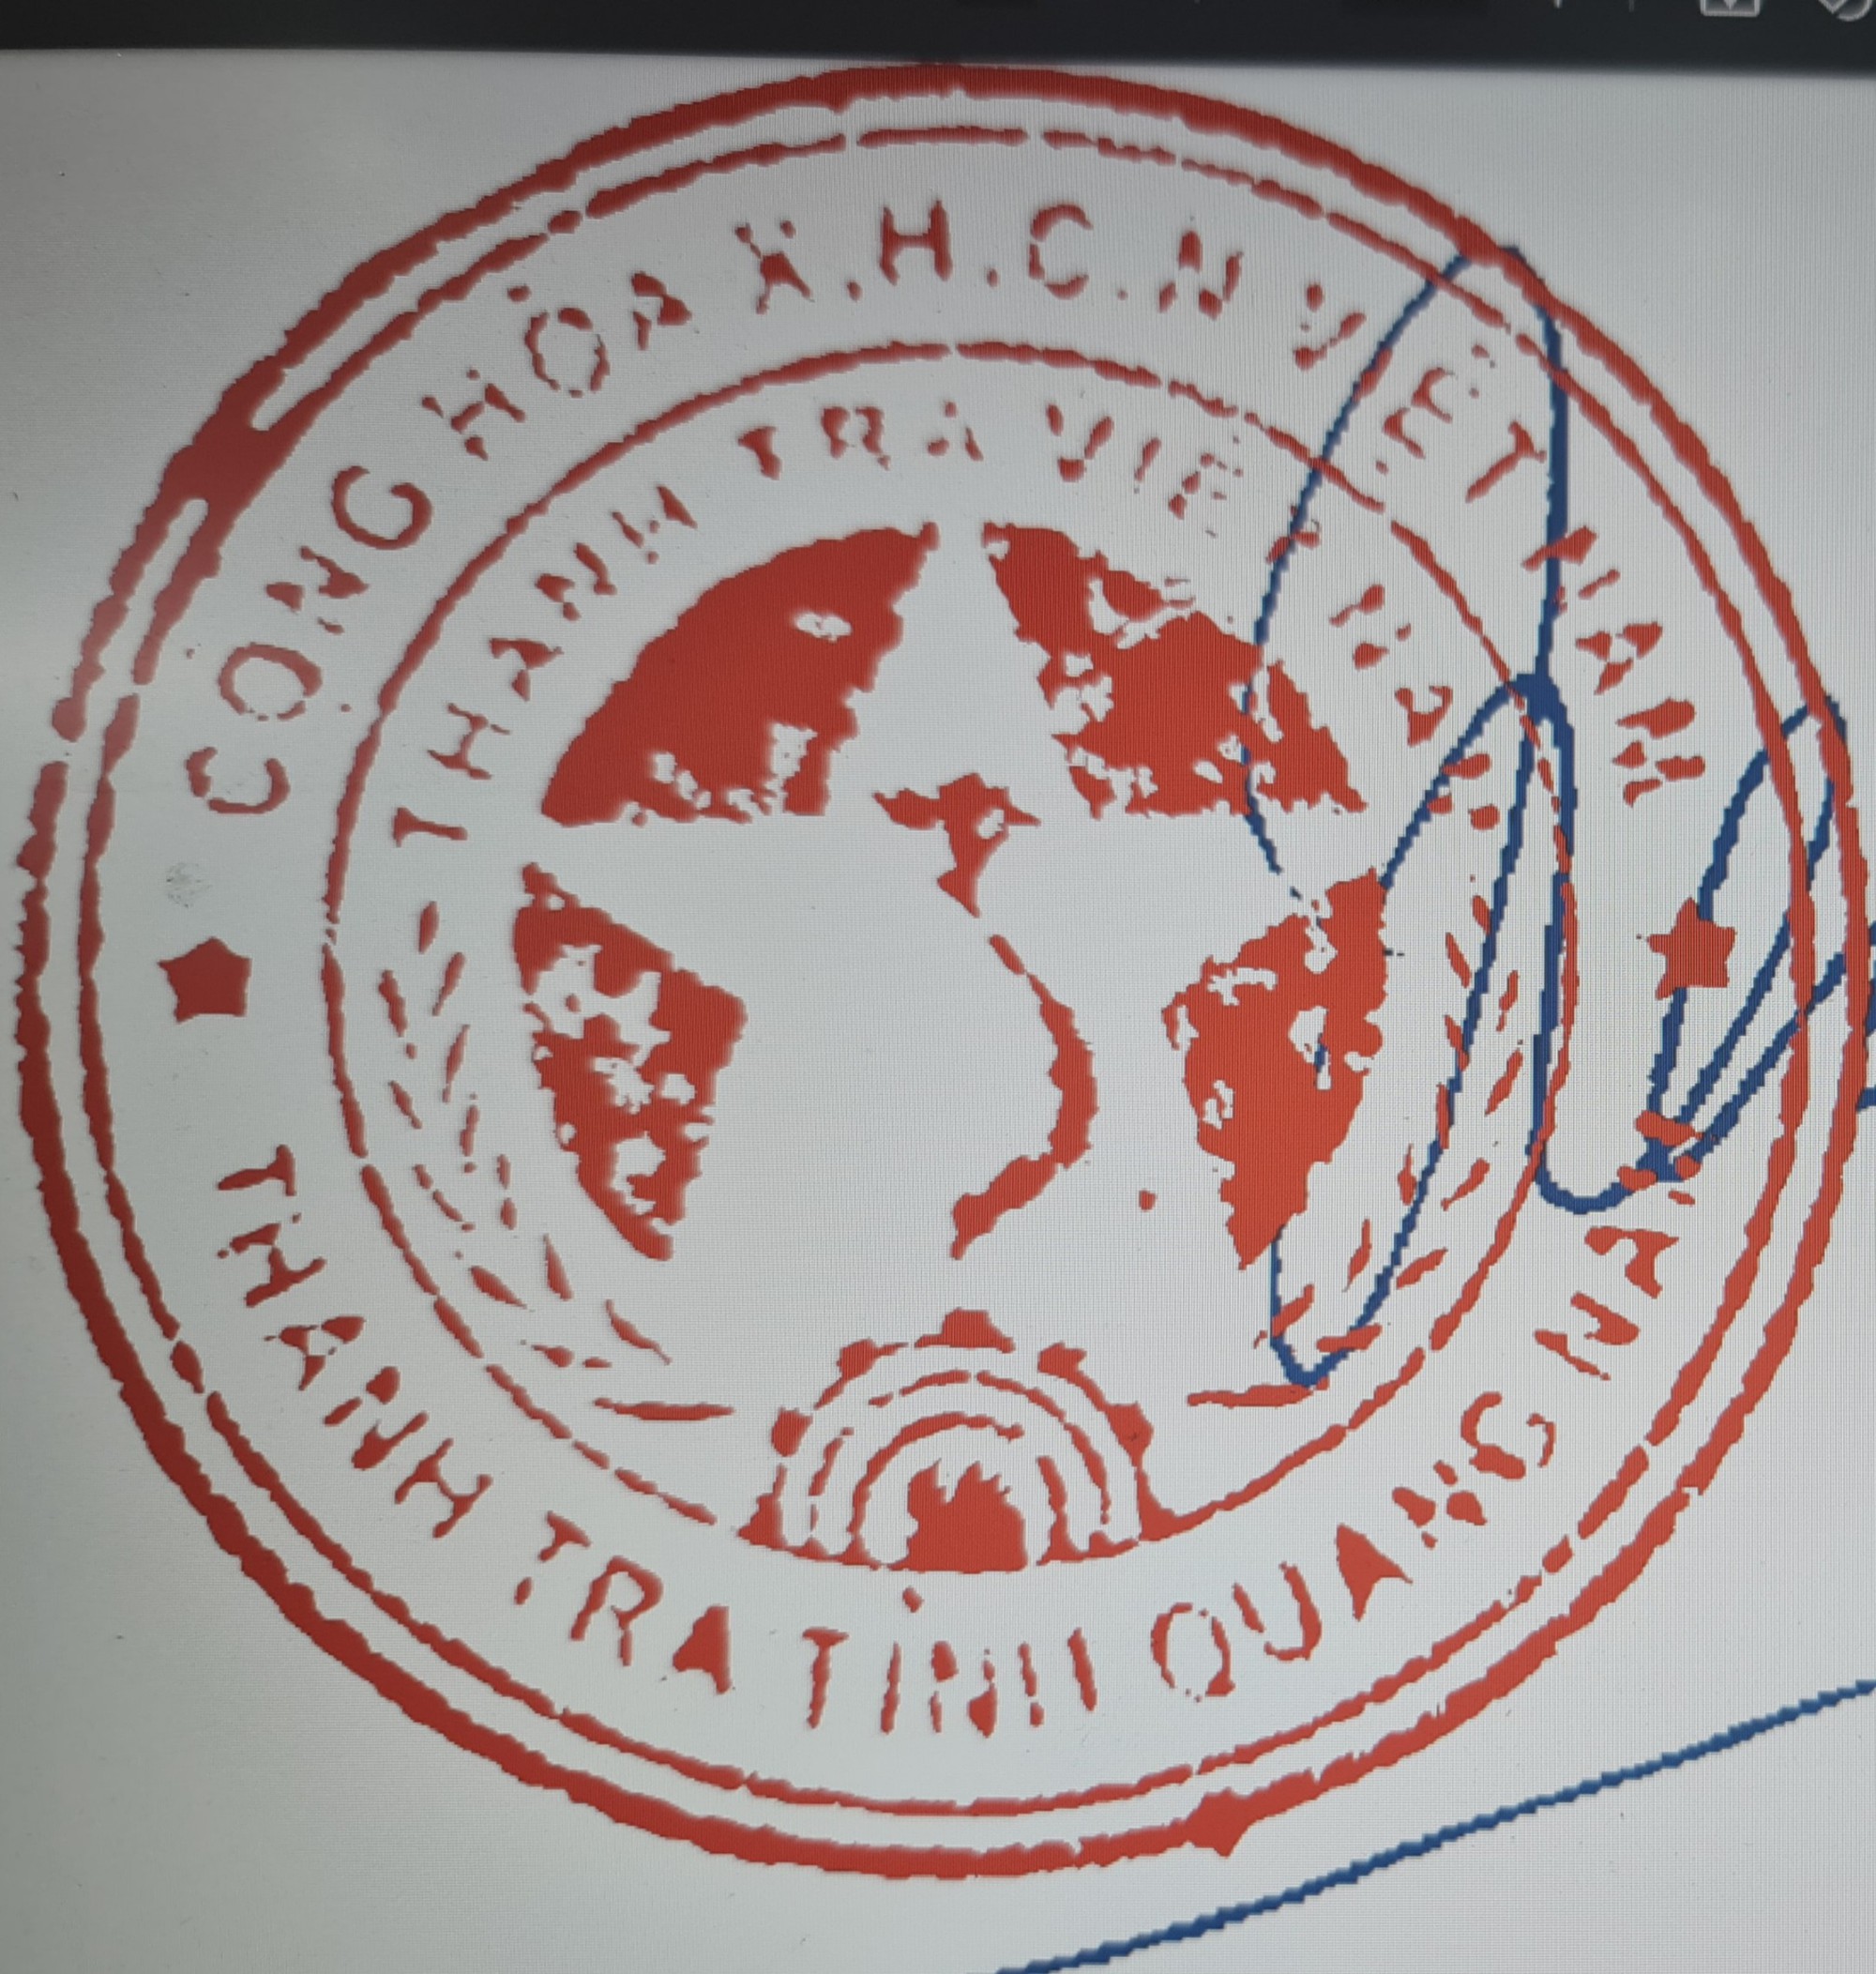 Thanh tra tỉnh Quảng Nam thông tin mới nhất về con dấu trong văn bản thiếu ký hiệu quần đảo Hoàng Sa - Ảnh 2.